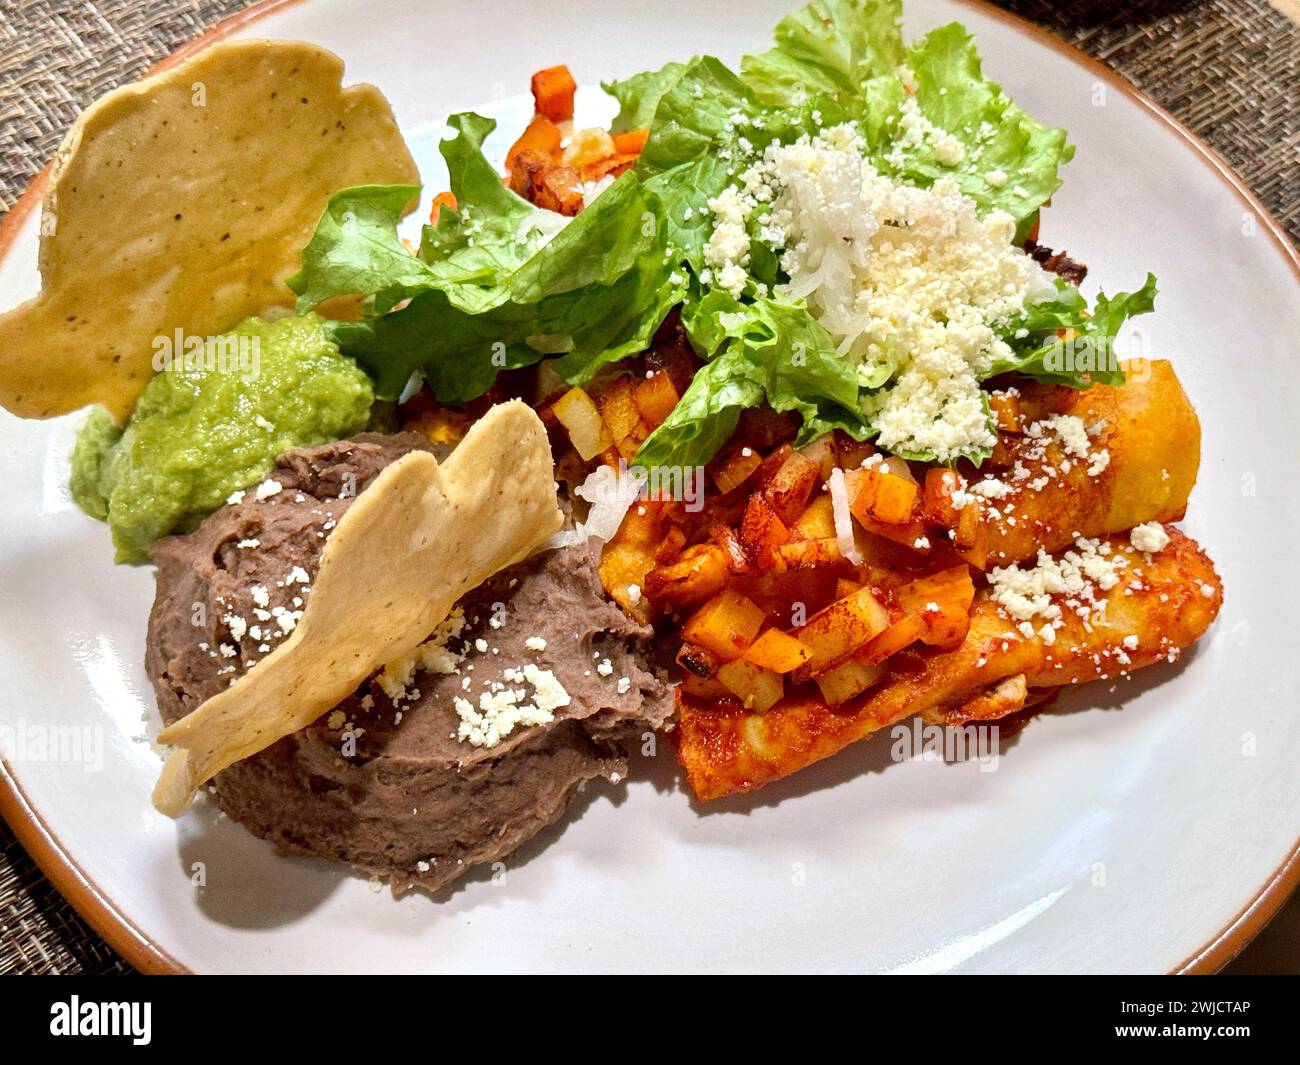 Herzhafte Enchiladas mit roter Sauce, gepaart mit cremigen, frischen Guacamole, knusprigen Totopos und zerbröckeltem Queso Fresco. Stockfoto